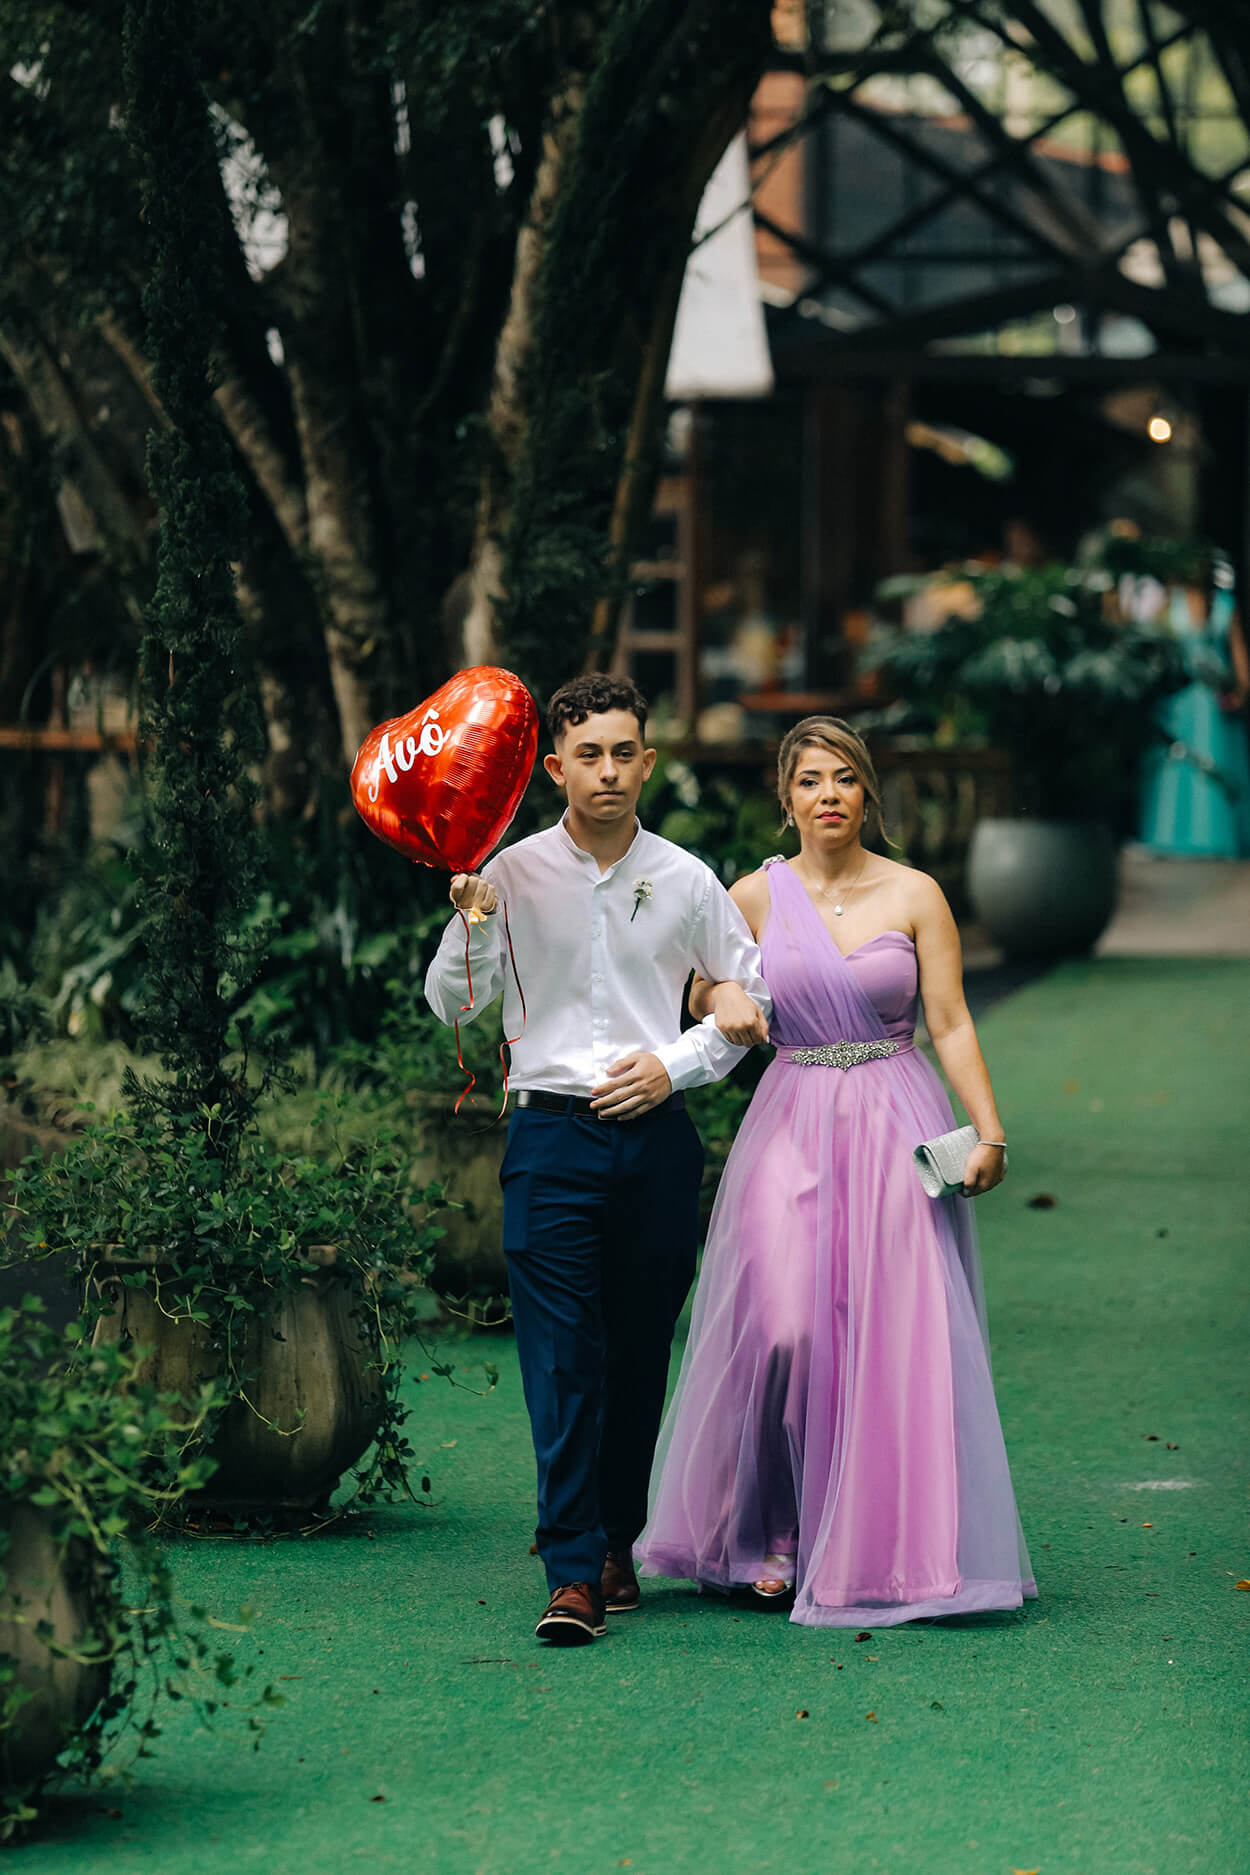 Padrinho segurnaod balão vermelhi e mulher com vestido lilás